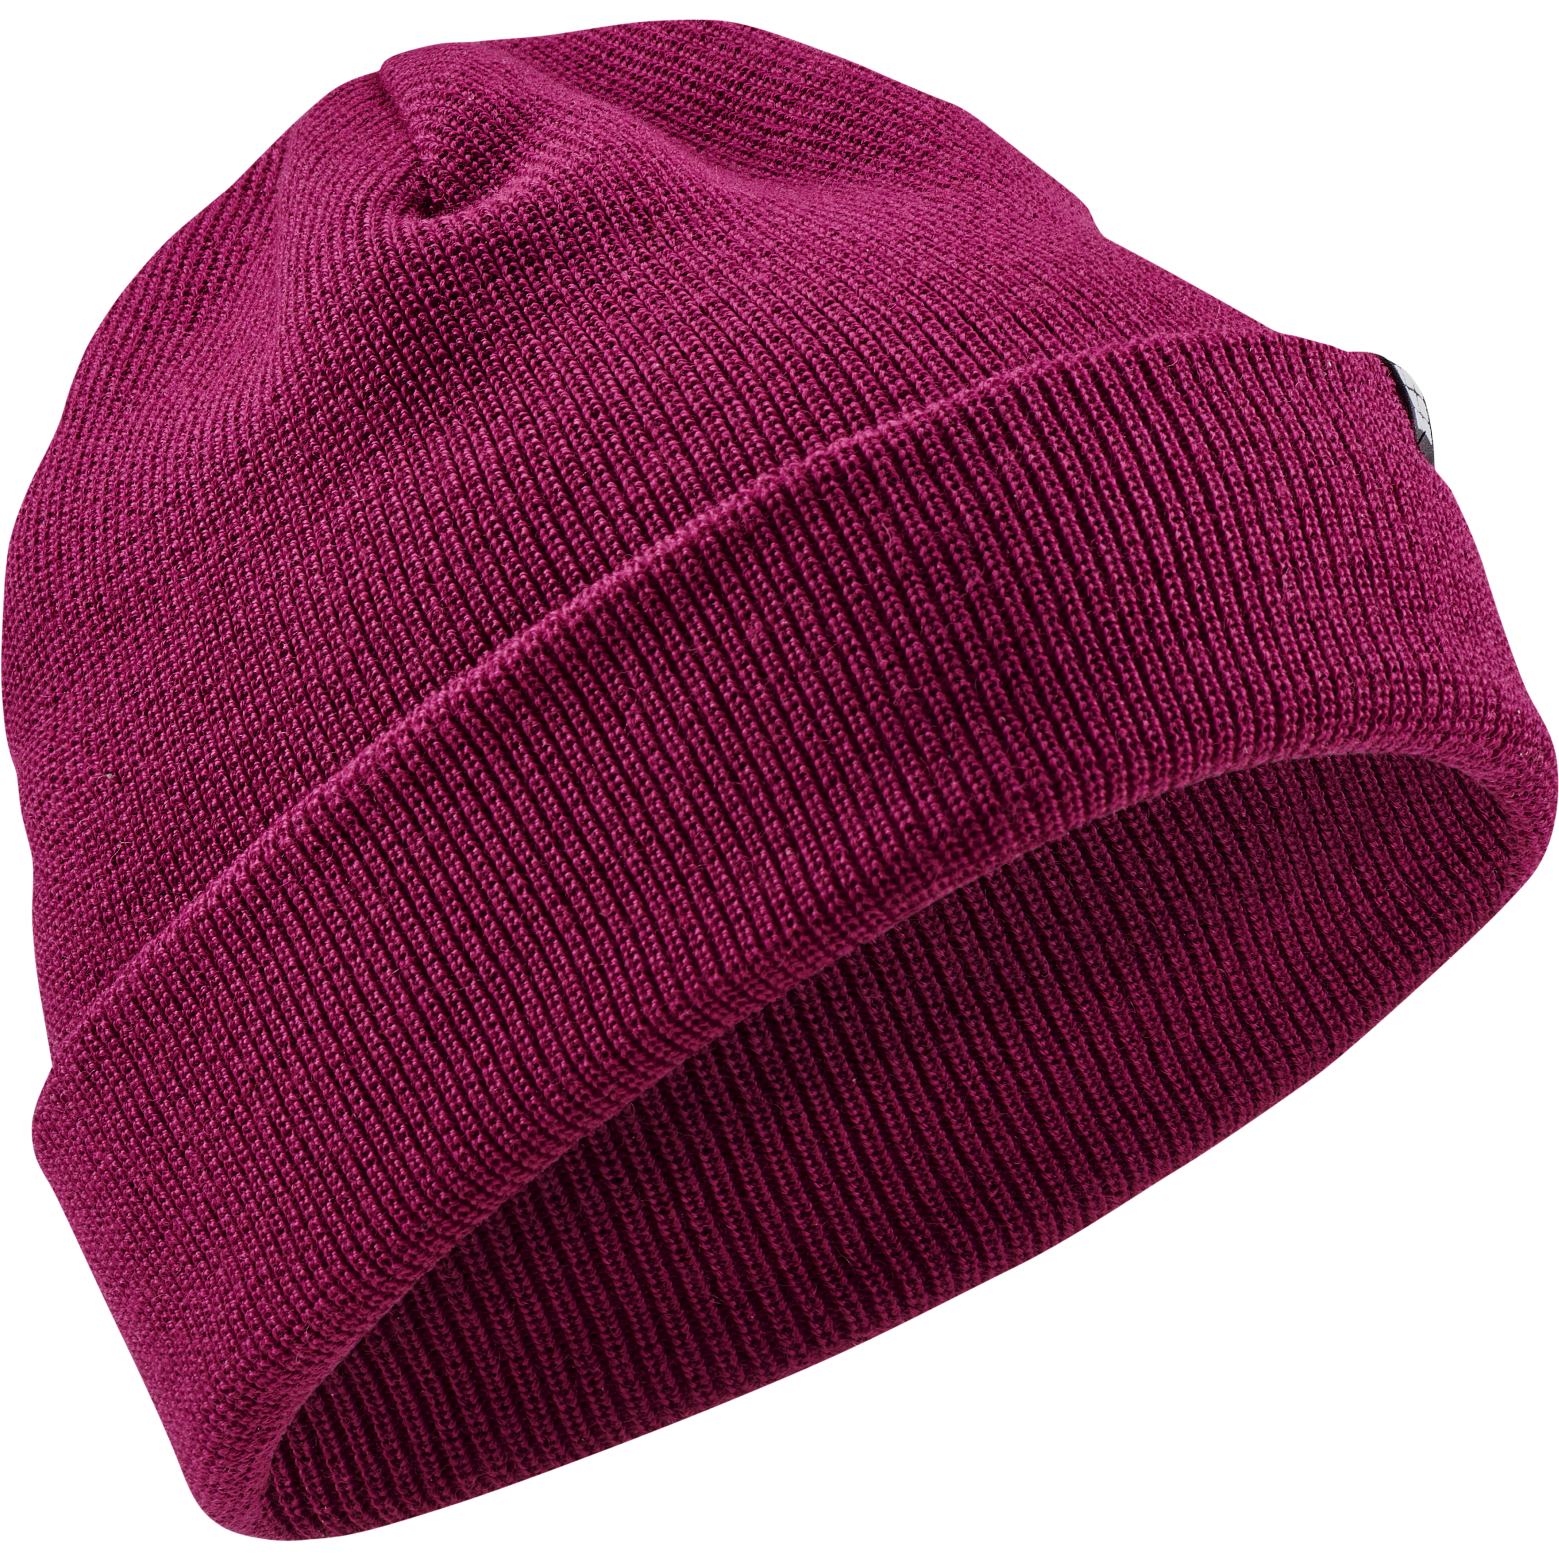 Produktbild von CEP Cold Weather Merino Mütze - purple